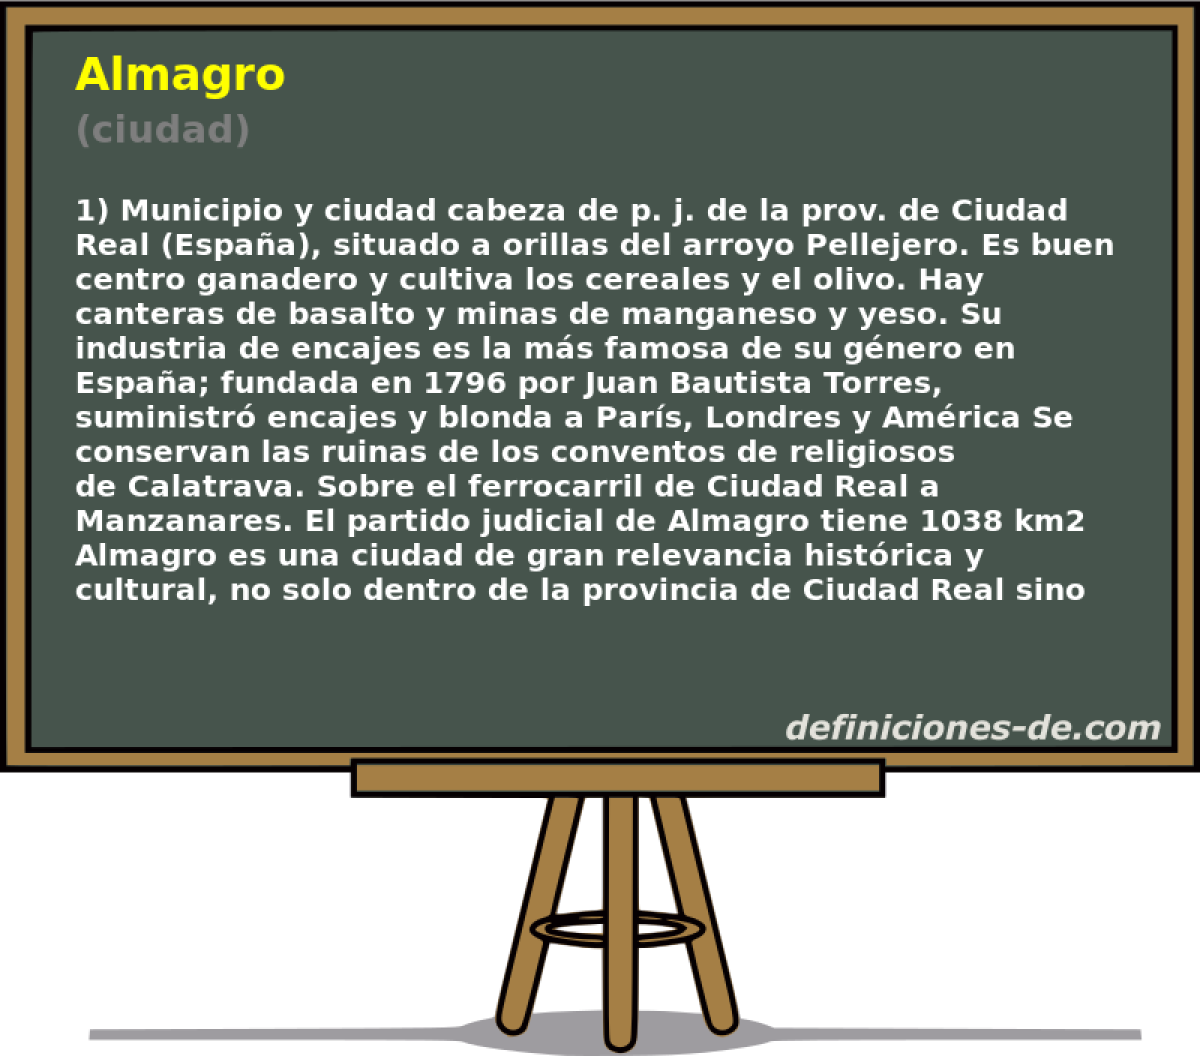 Almagro (ciudad)